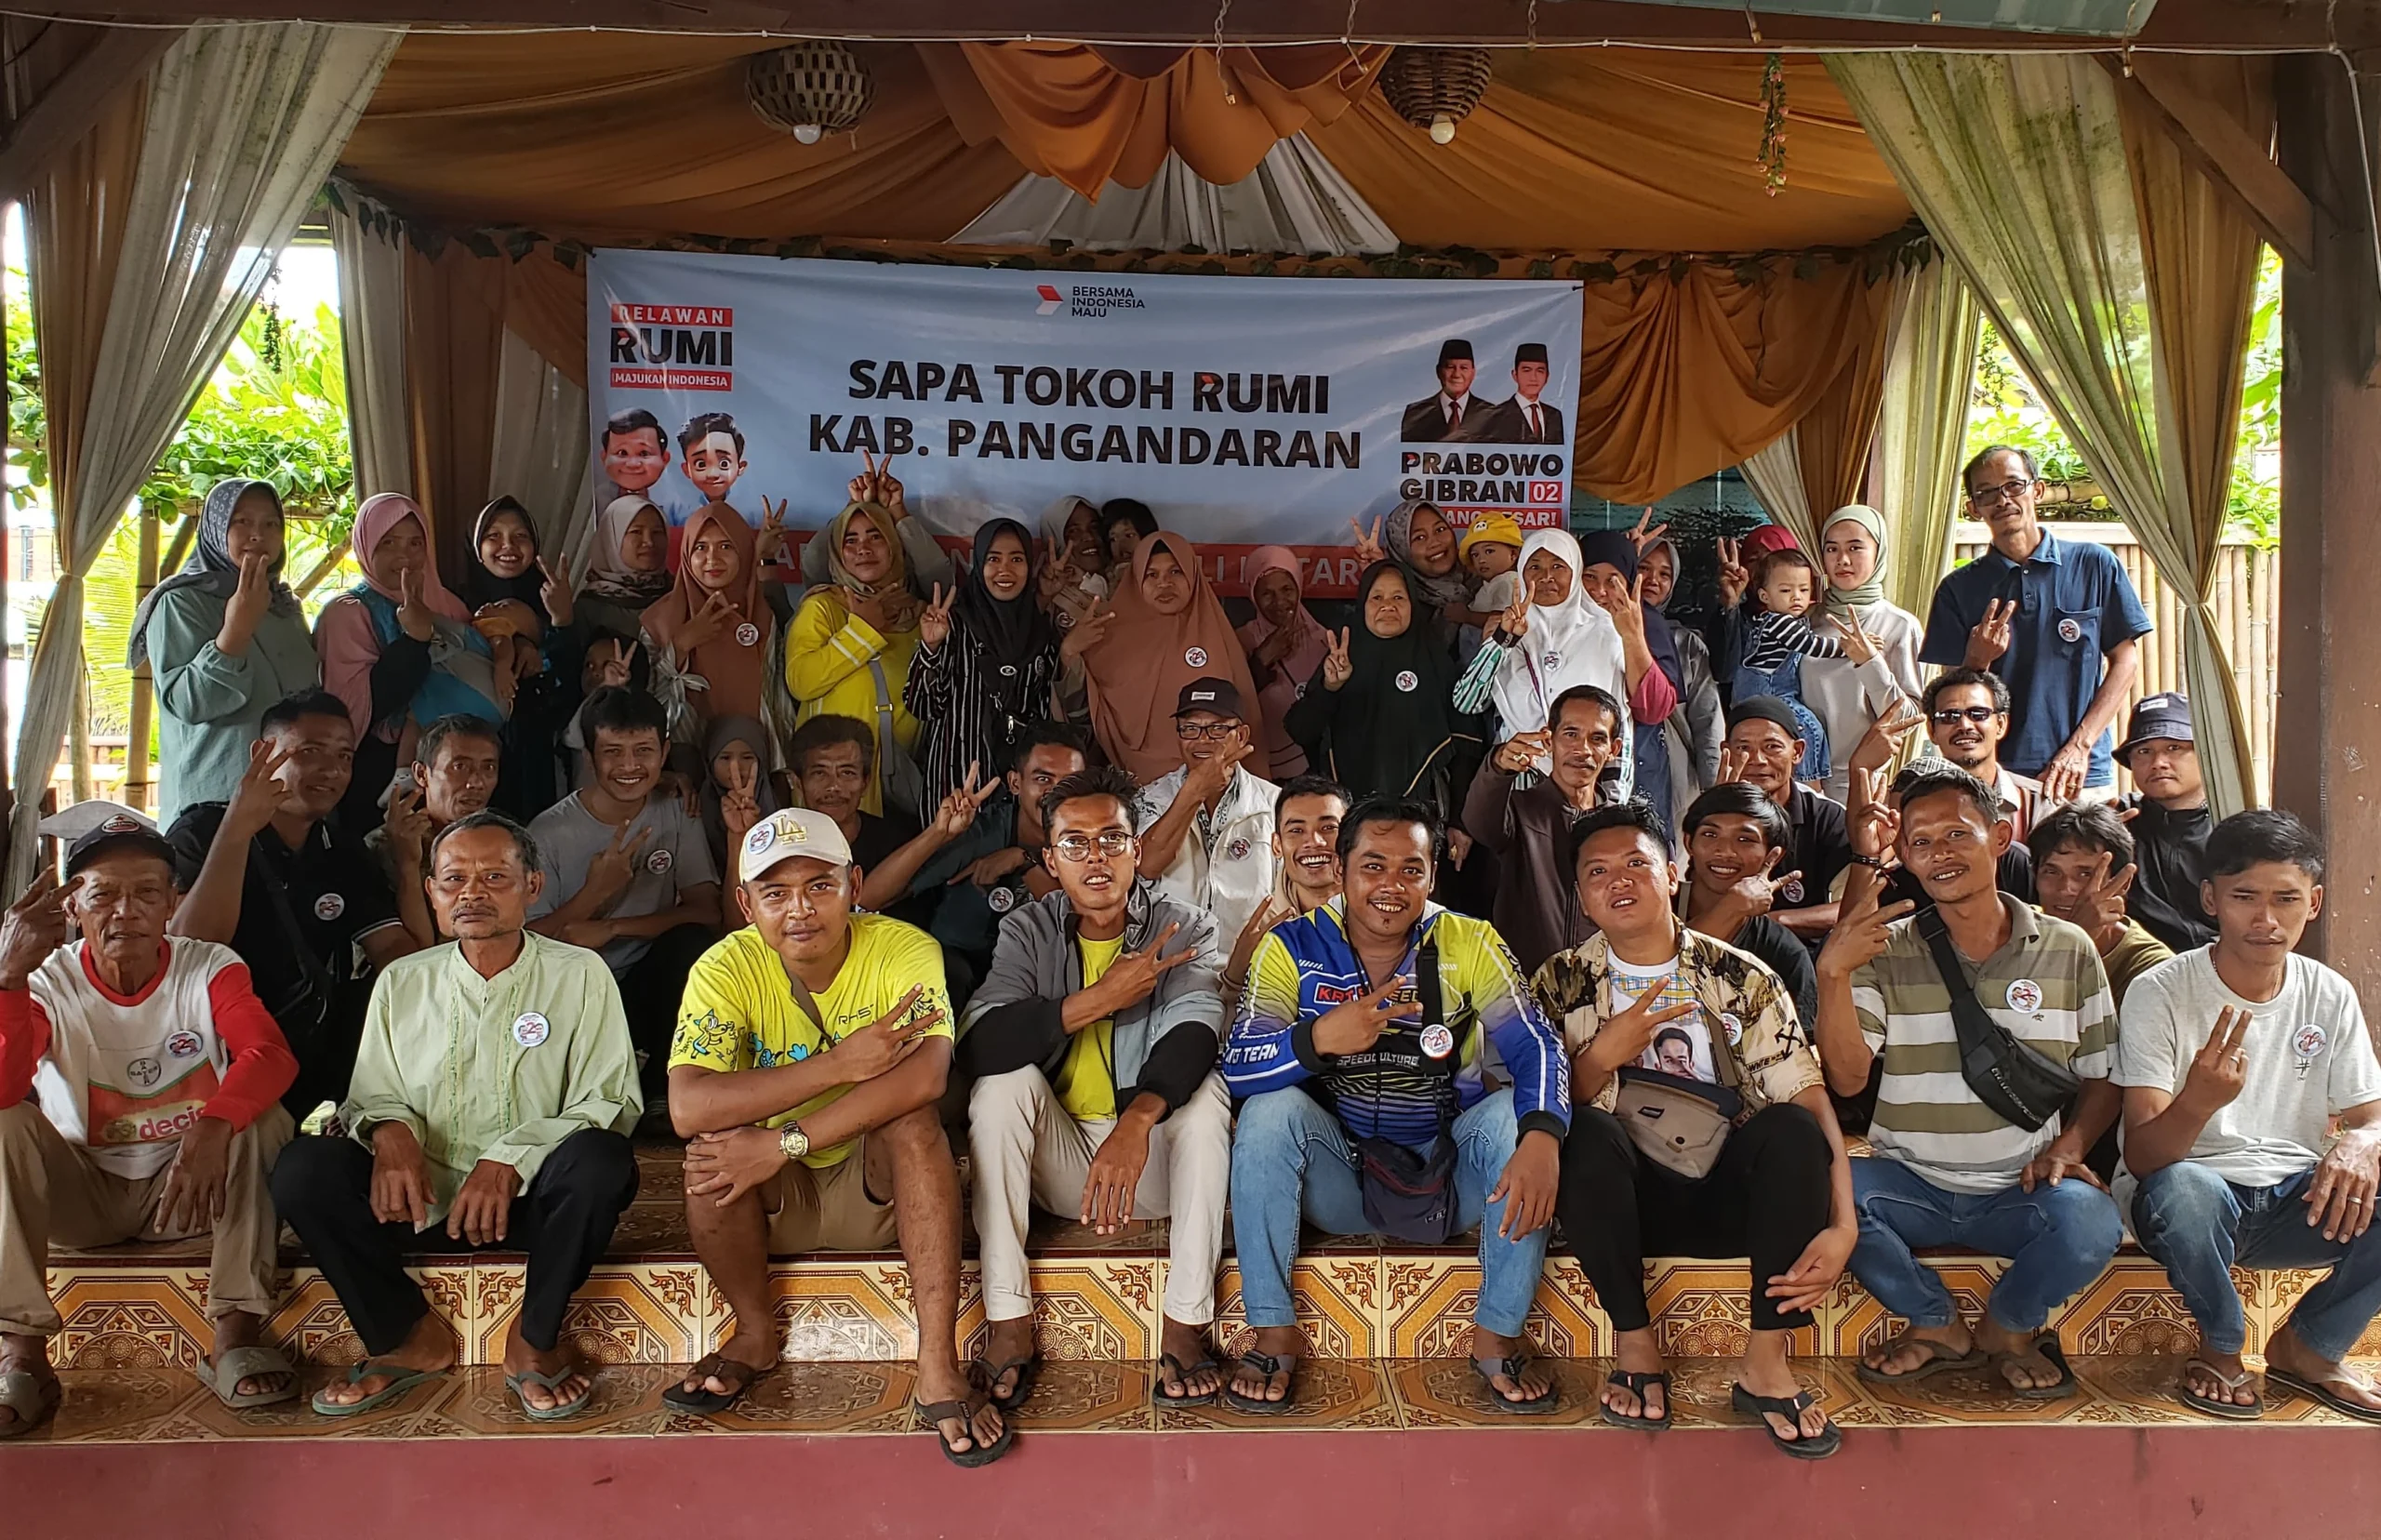 RUMI terus gencar melakukan sosialisasi untuk pemenangan Paslon Capres 02 Prabowo Subianto dan Gibran Rakabuming Raka di wilayah Jawa Barat.